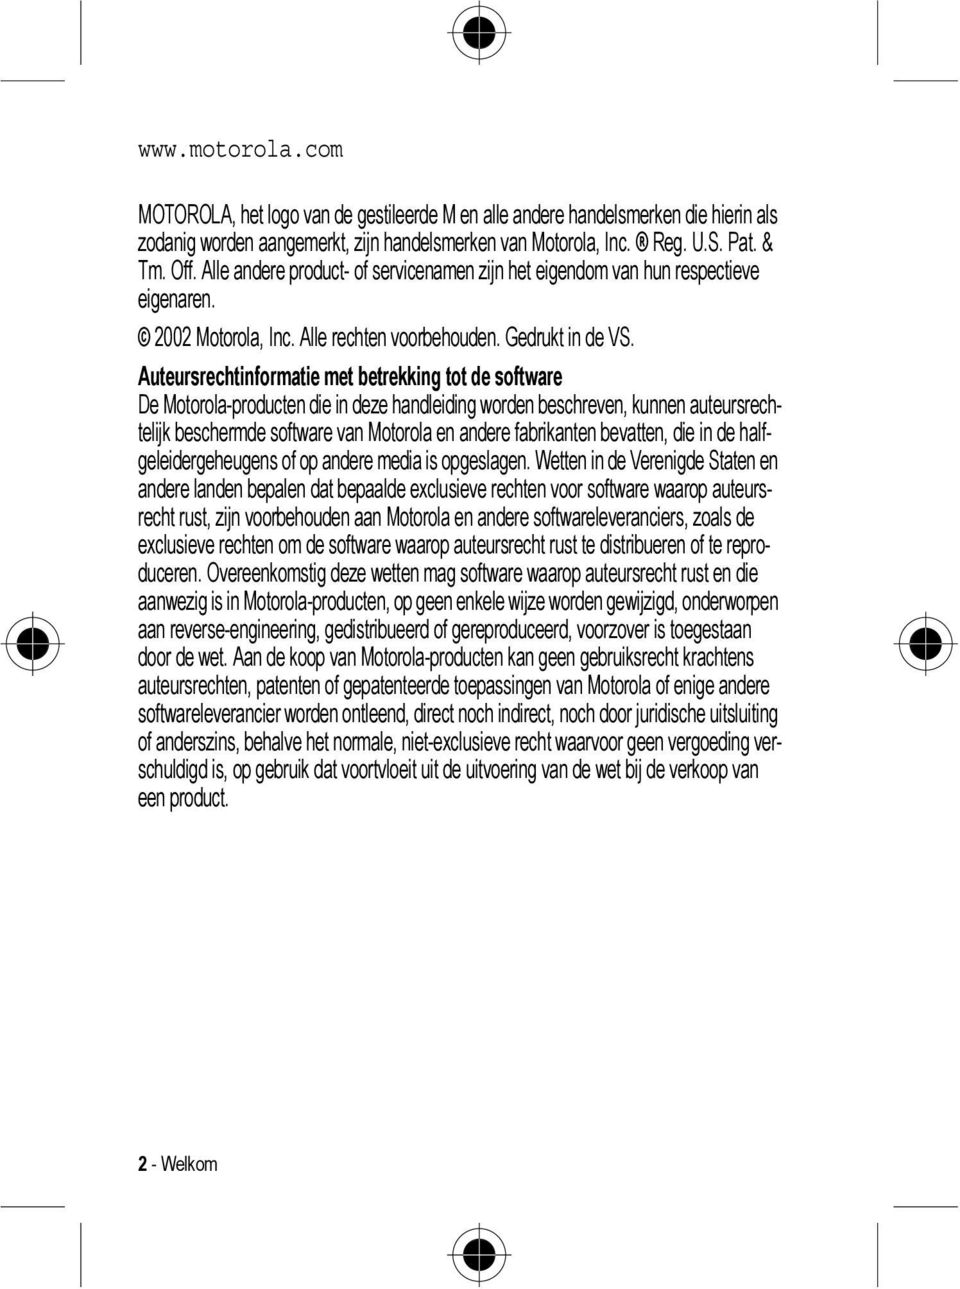 Auteursrechtinformatie met betrekking tot de software De Motorola-producten die in deze handleiding worden beschreven, kunnen auteursrechtelijk beschermde software van Motorola en andere fabrikanten